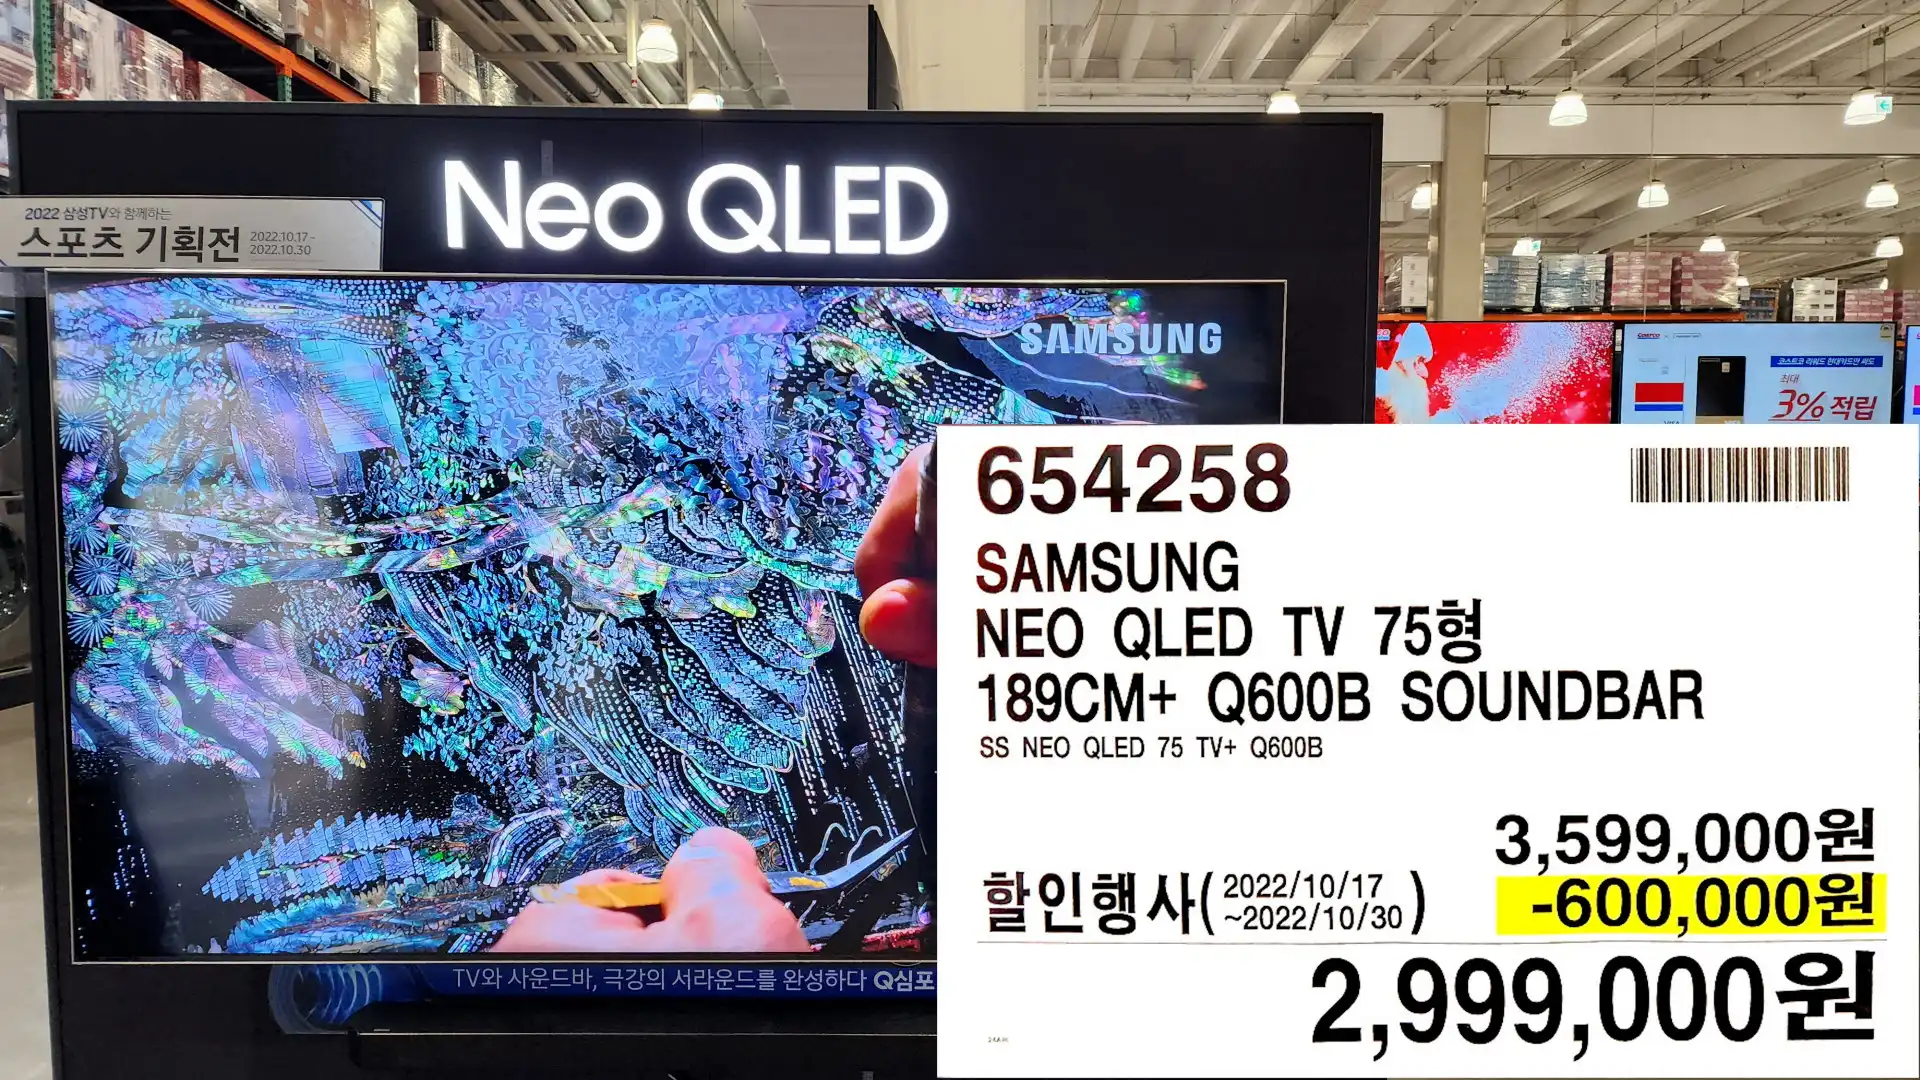 NEO QLED TV 75%!
189CM+ Q600B SOUNDBAR
SS NEO QLED 75 TV+ Q600B
2&#44;999&#44;000원